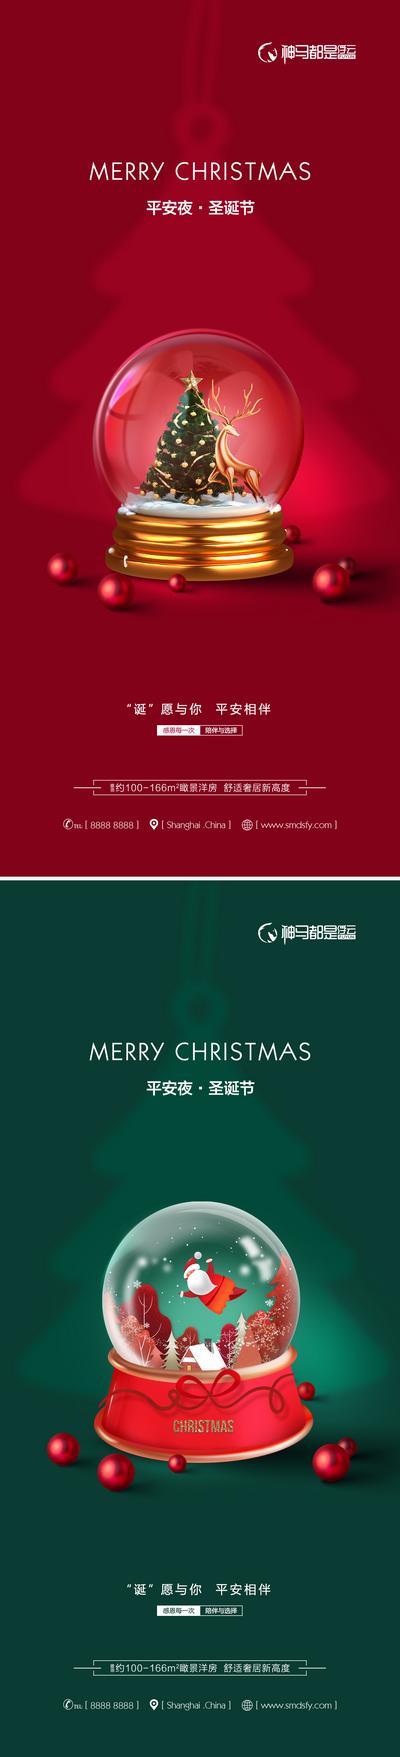 【南门网】海报 房地产 公历节日 圣诞节 圣诞老人 水晶球 圣诞树 麋鹿